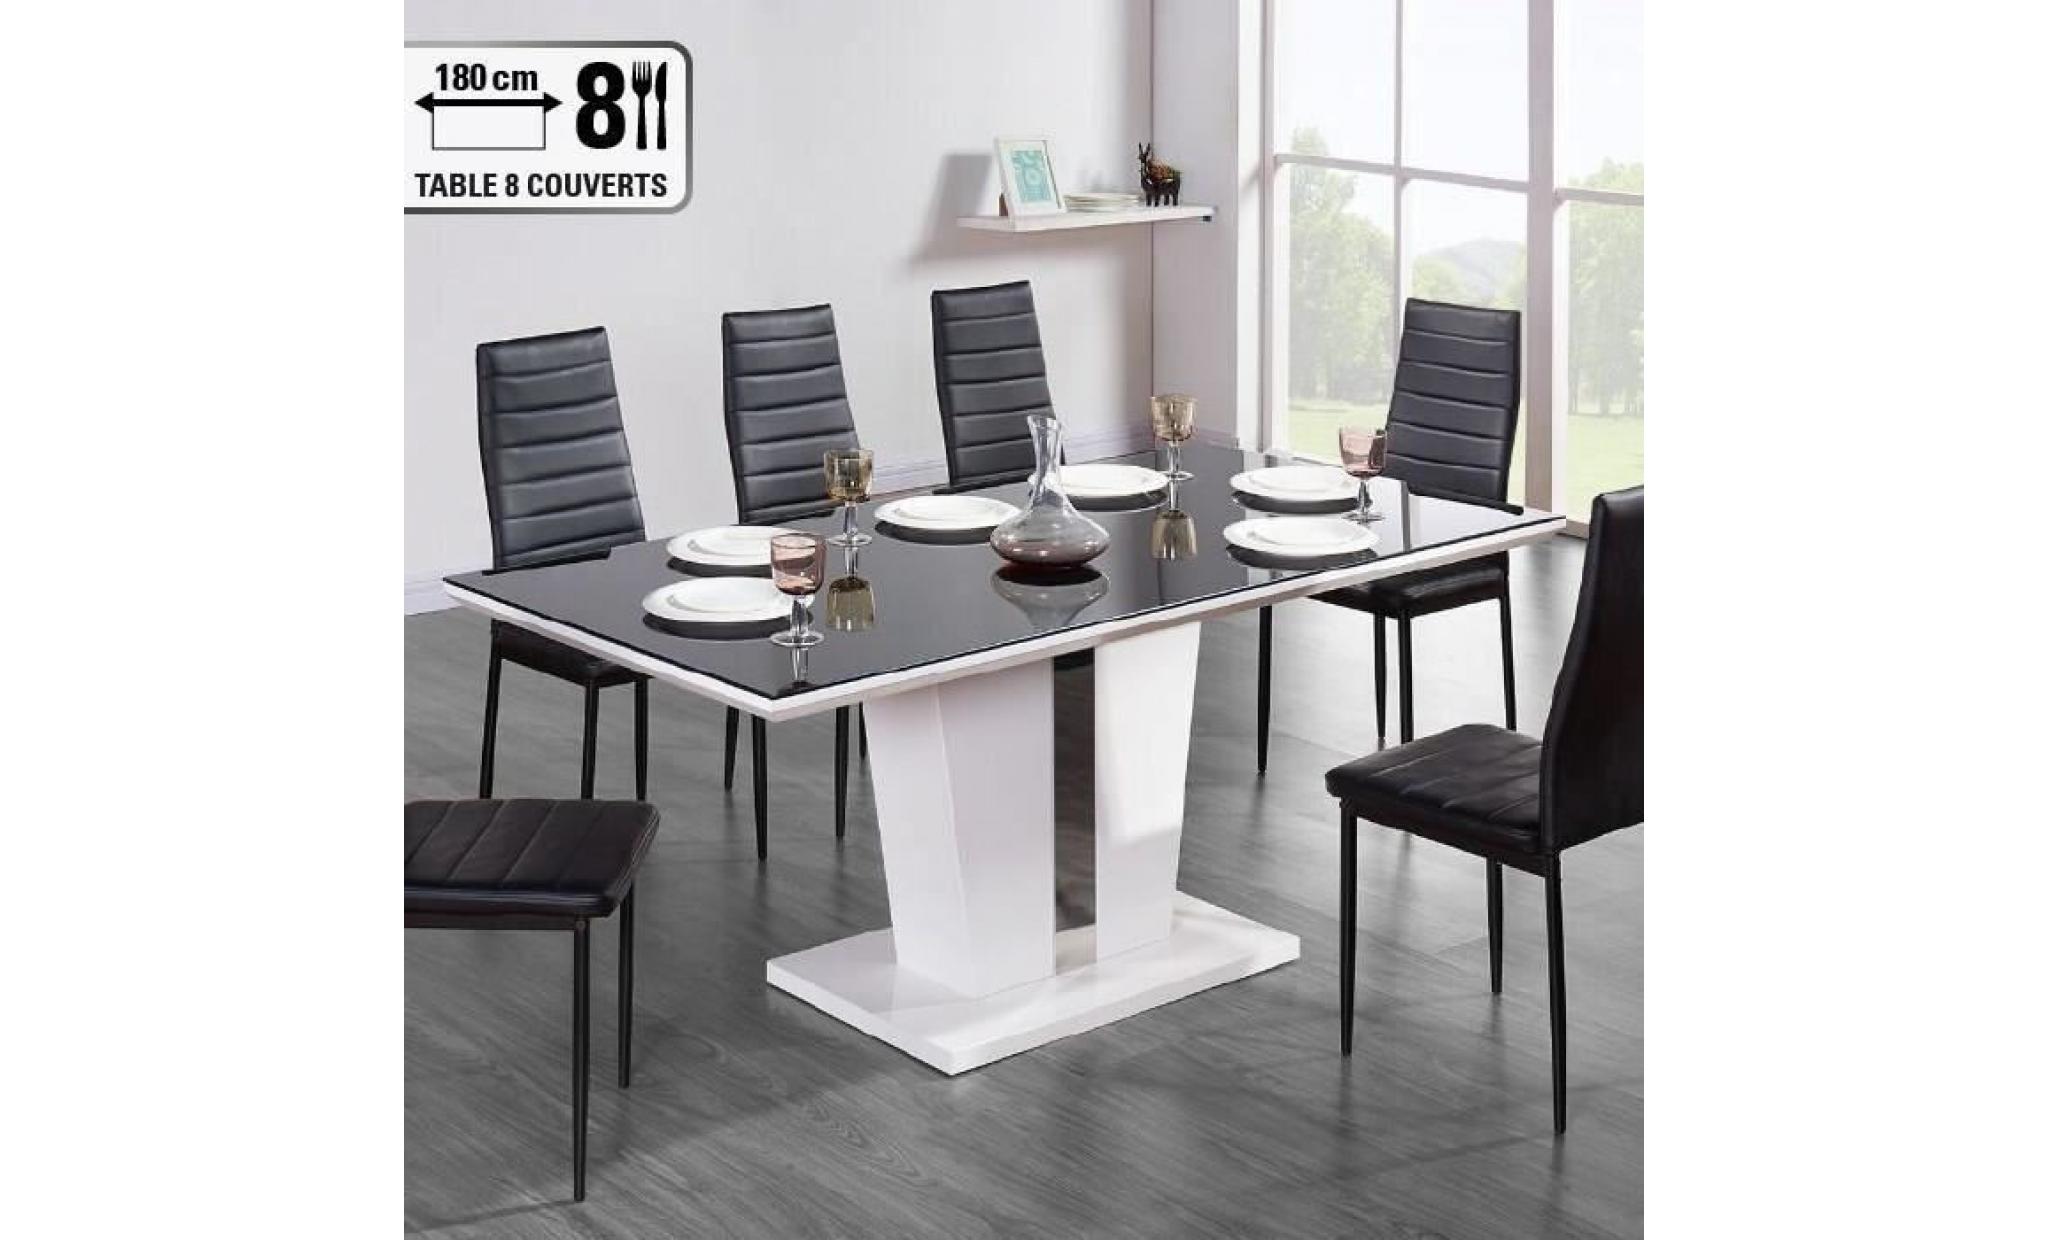 trevise table à manger 8 personnes contemporain   laqué blanc brillant + plateau de verre trempé noir   l 180 x l 90 cm pas cher